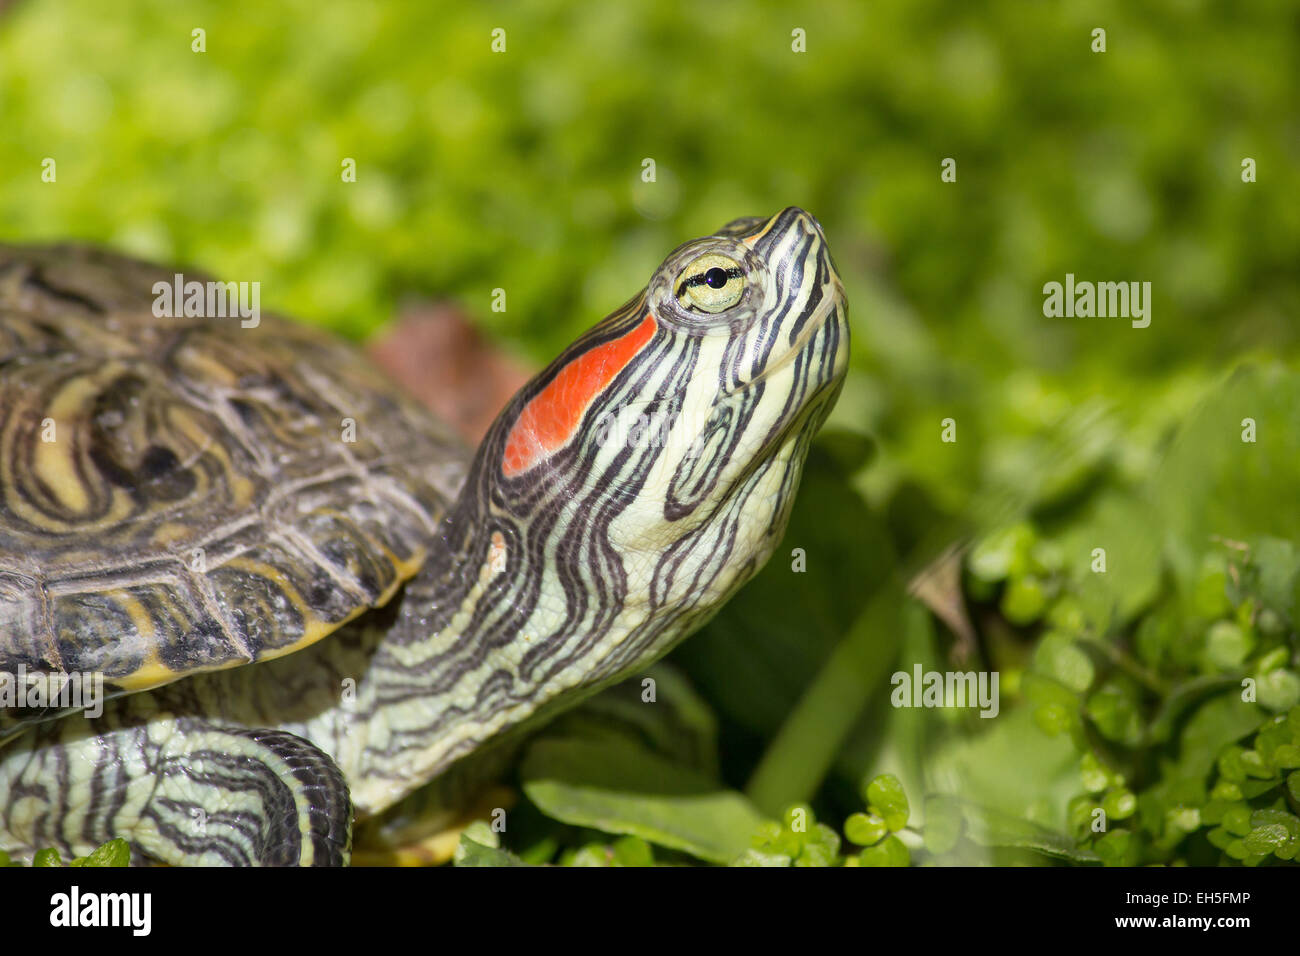 Red eared slider - Trachemys scripta elegans tortue, tête portrait dans la nature de l'environnement Banque D'Images